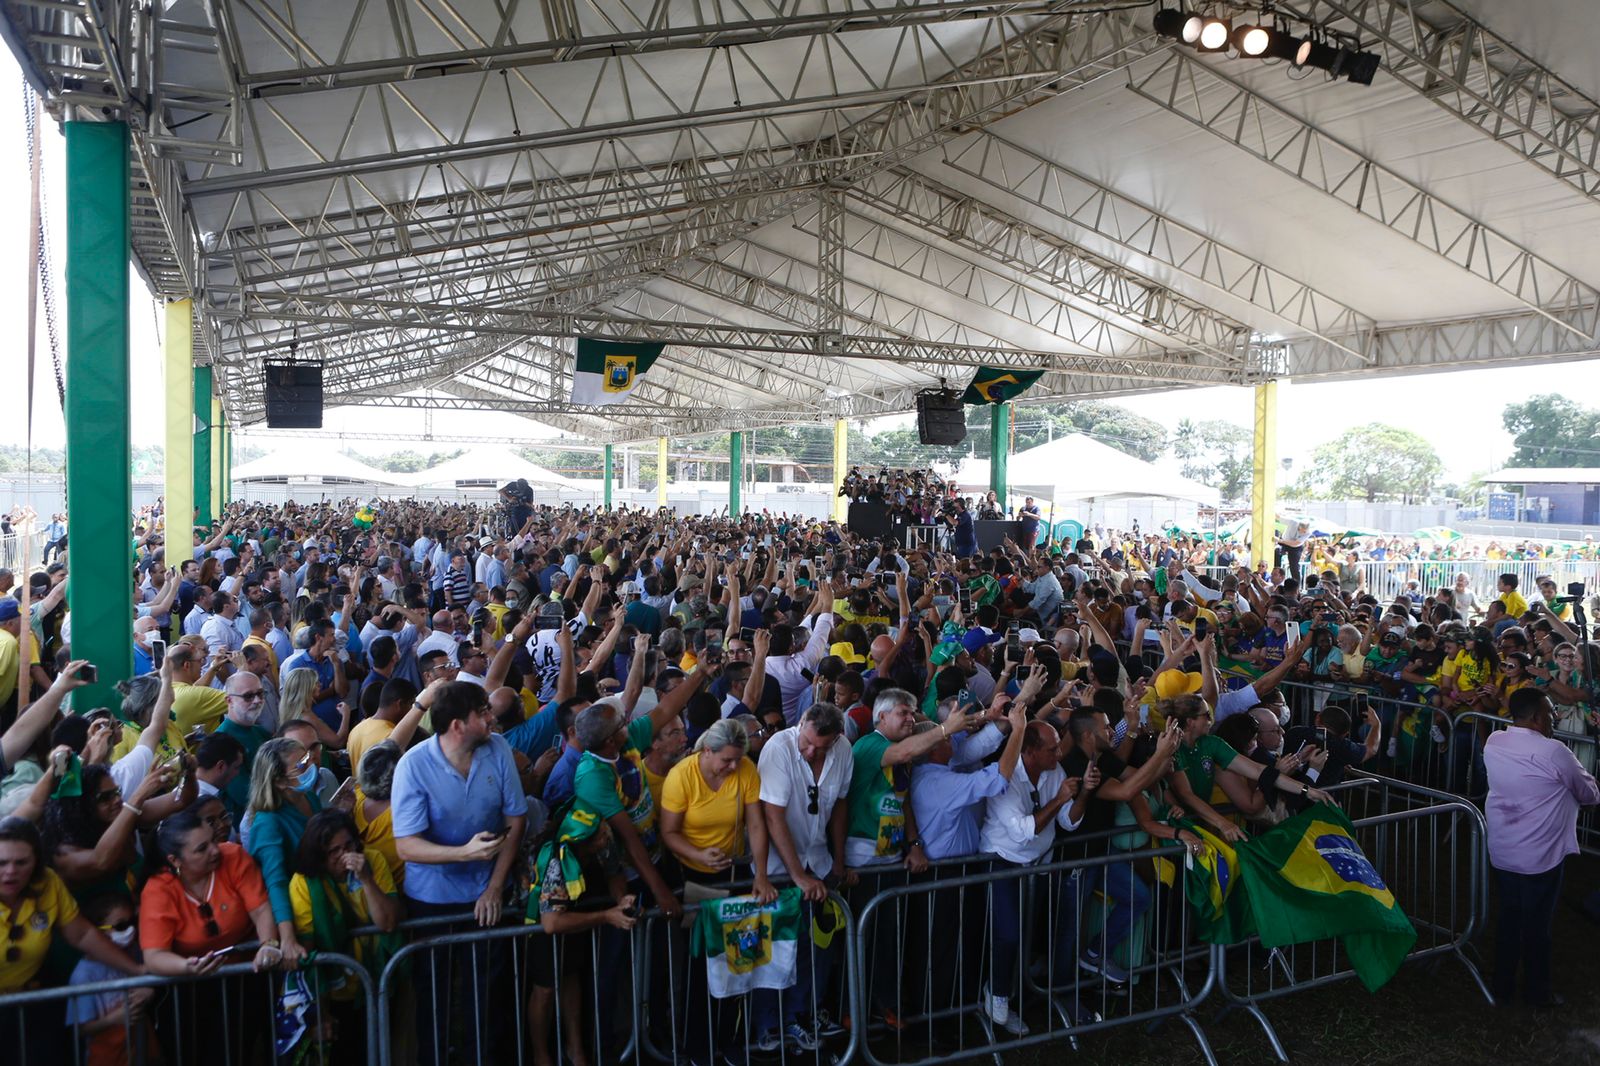 VÍDEO: Multidão grita durante discurso de Bolsonaro no RN: “Fora, PT”